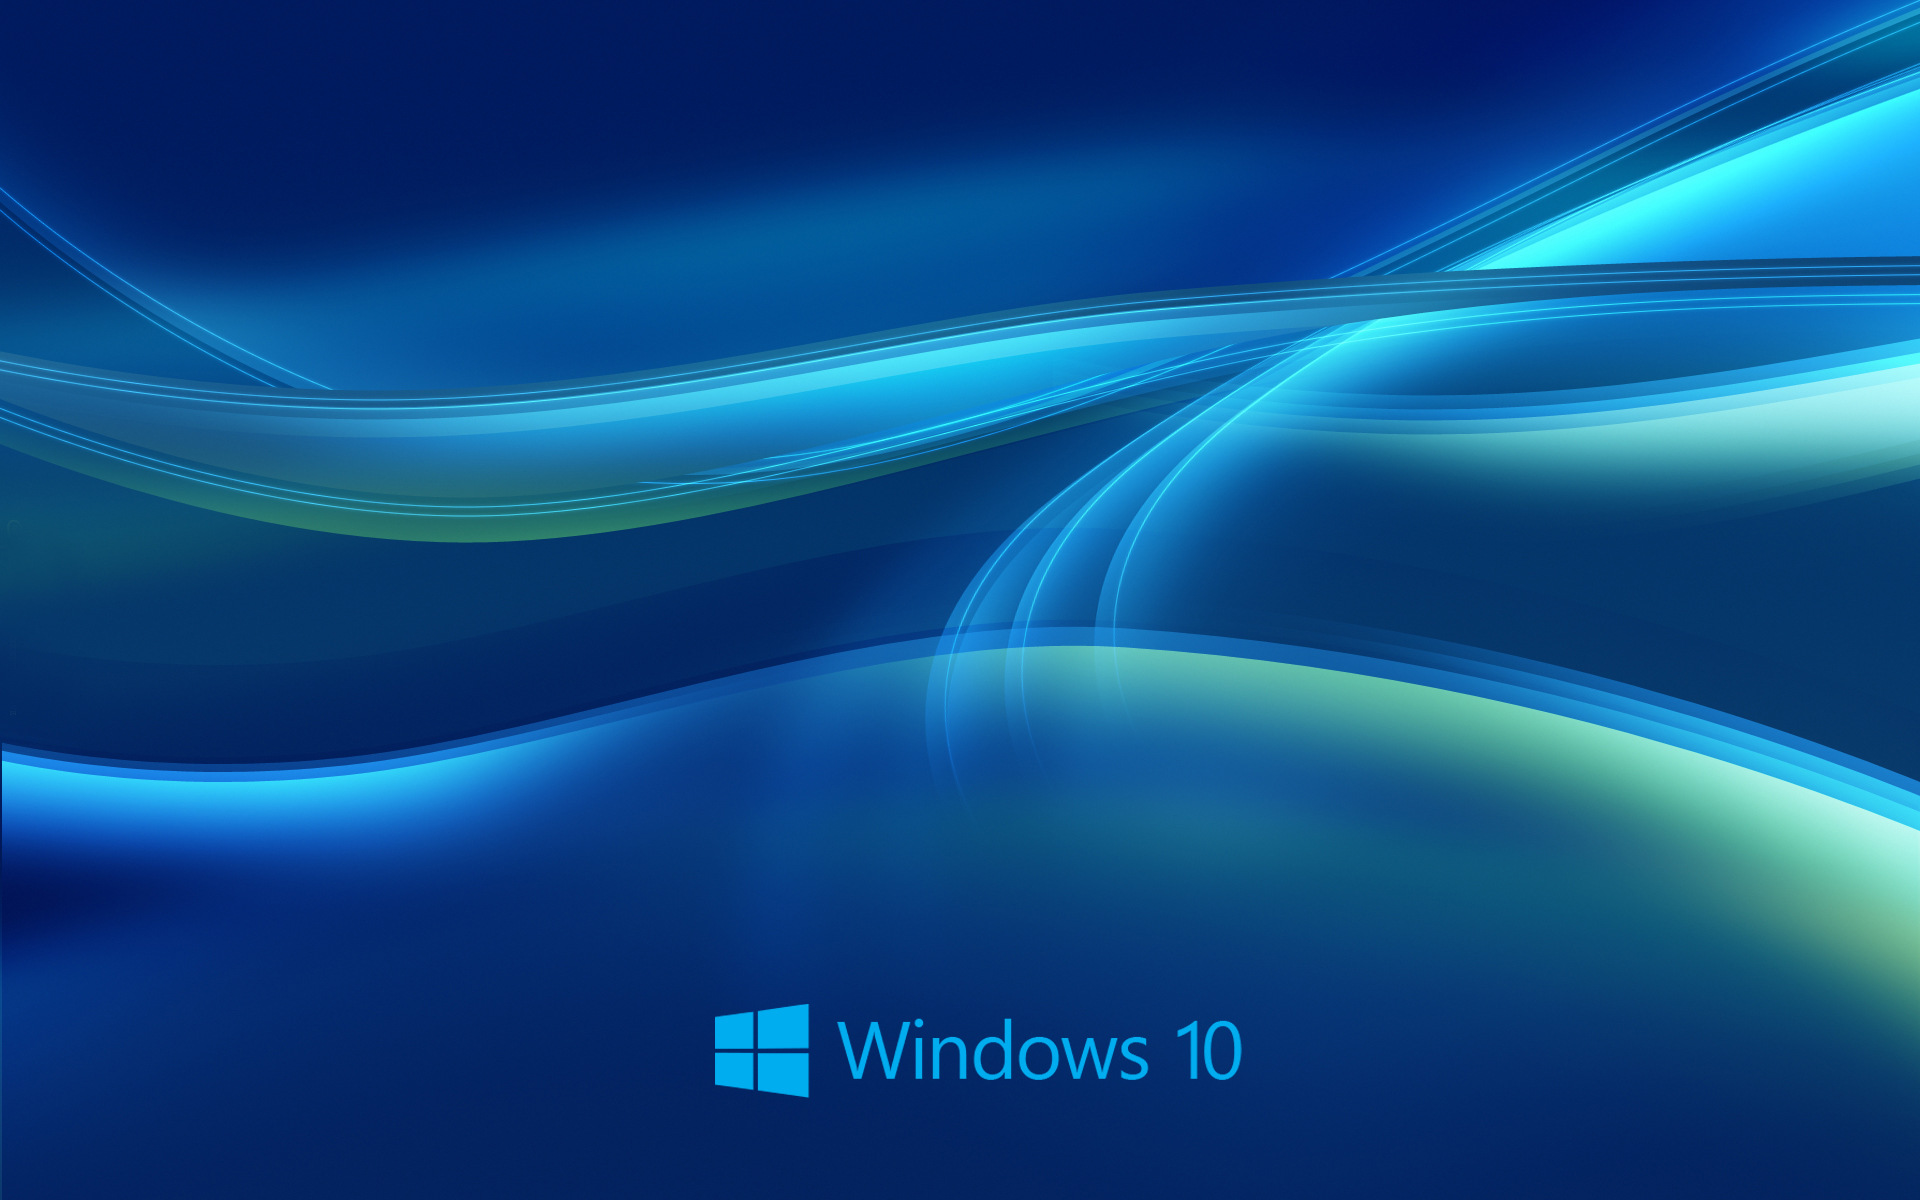 Các bức ảnh nền Windows 10 đẹp mắt và đa dạng sẽ khiến bạn muốn thay đổi trang trí màn hình ngay lập tức! Hãy xem hình ảnh để tìm kiếm bức ảnh nền hoàn hảo cho thiết bị của bạn.